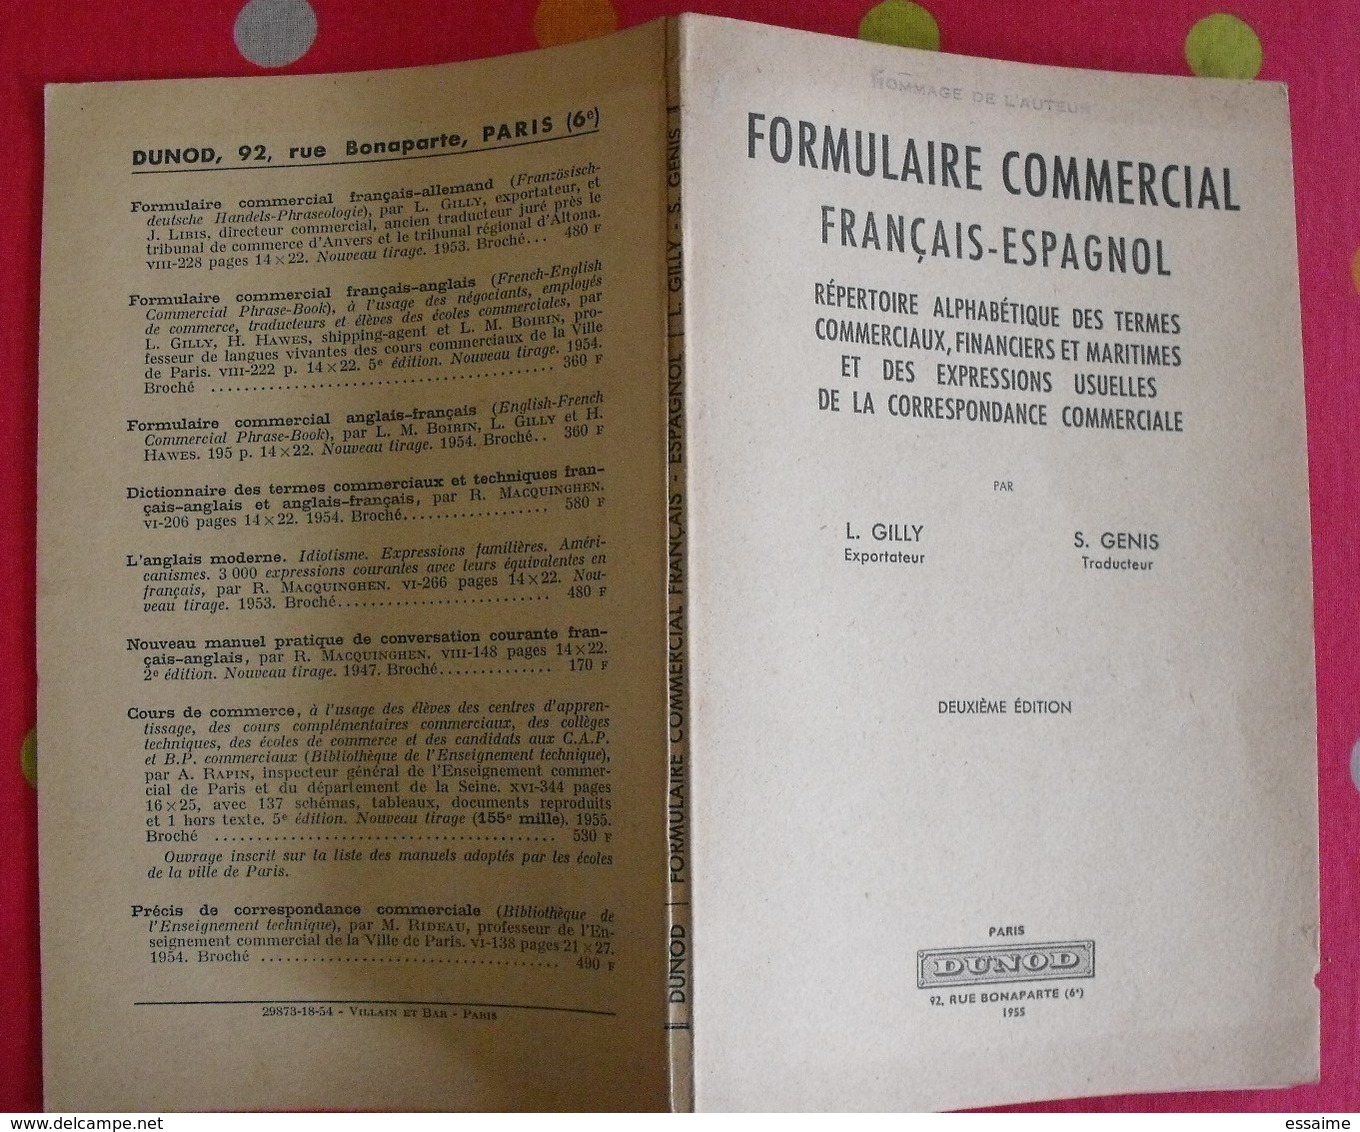 lot de 6 livres livrets scolaires ou autres en Espagnol. espana. espagne. entre 1934 et 1969